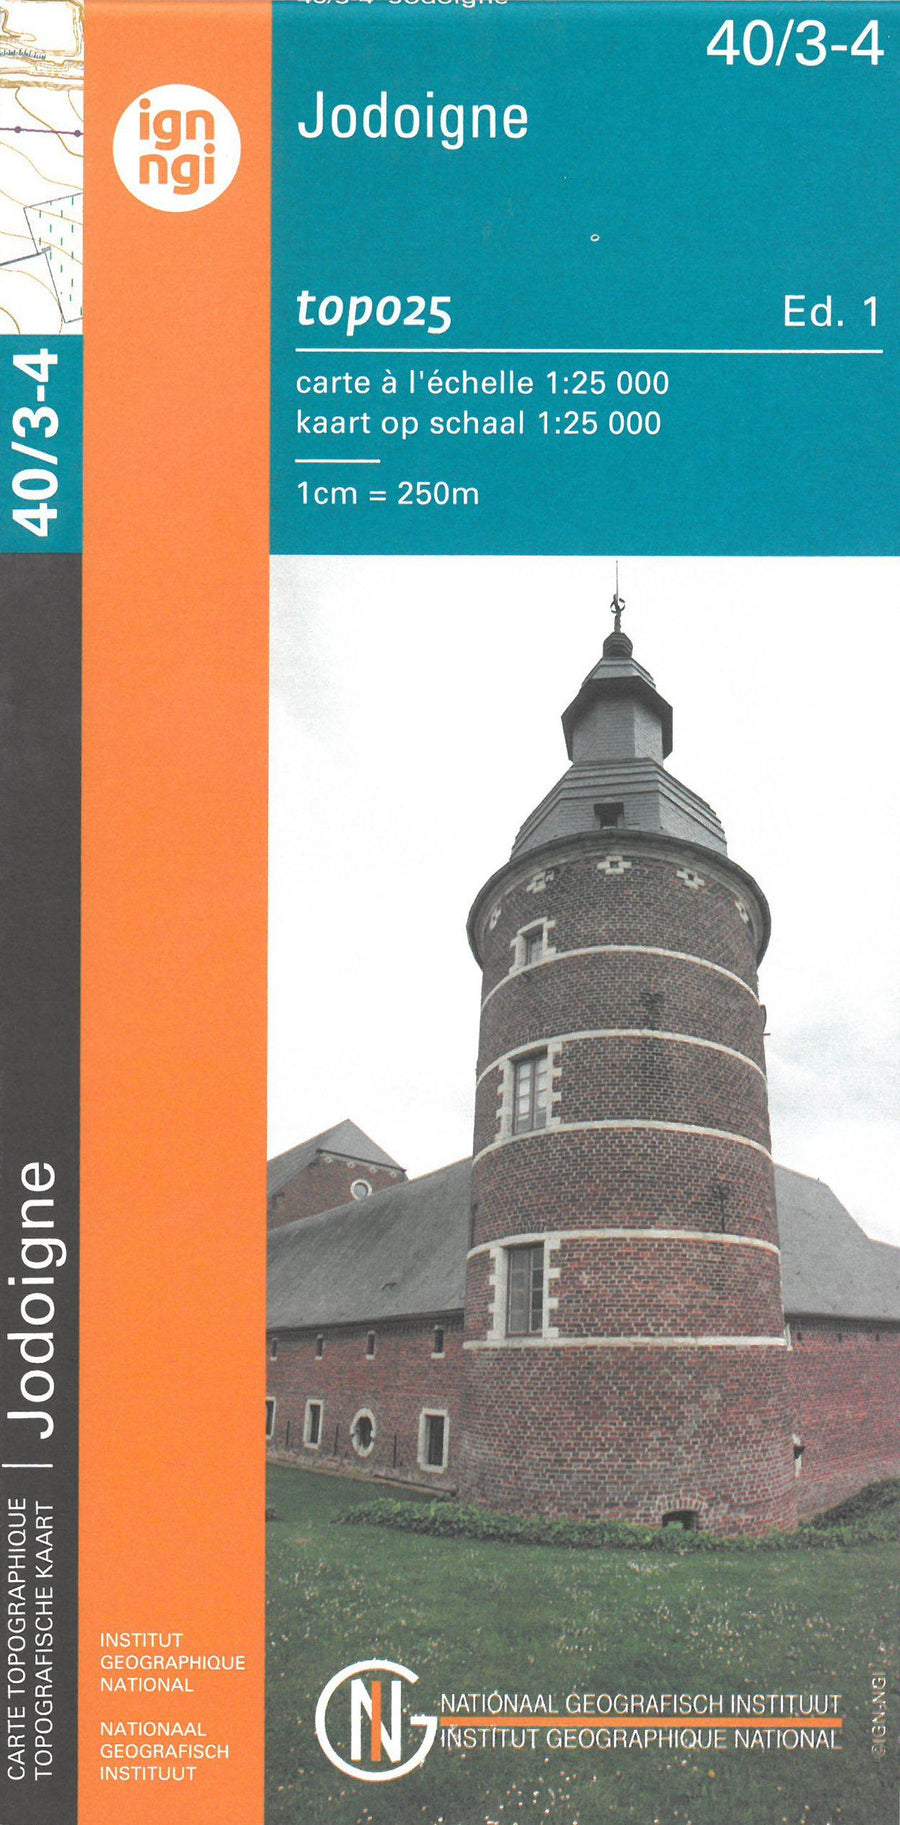 Carte topographique n° 40/3-4 - Jodoigne (Belgique) | NGI topo 25 carte pliée IGN Belgique 